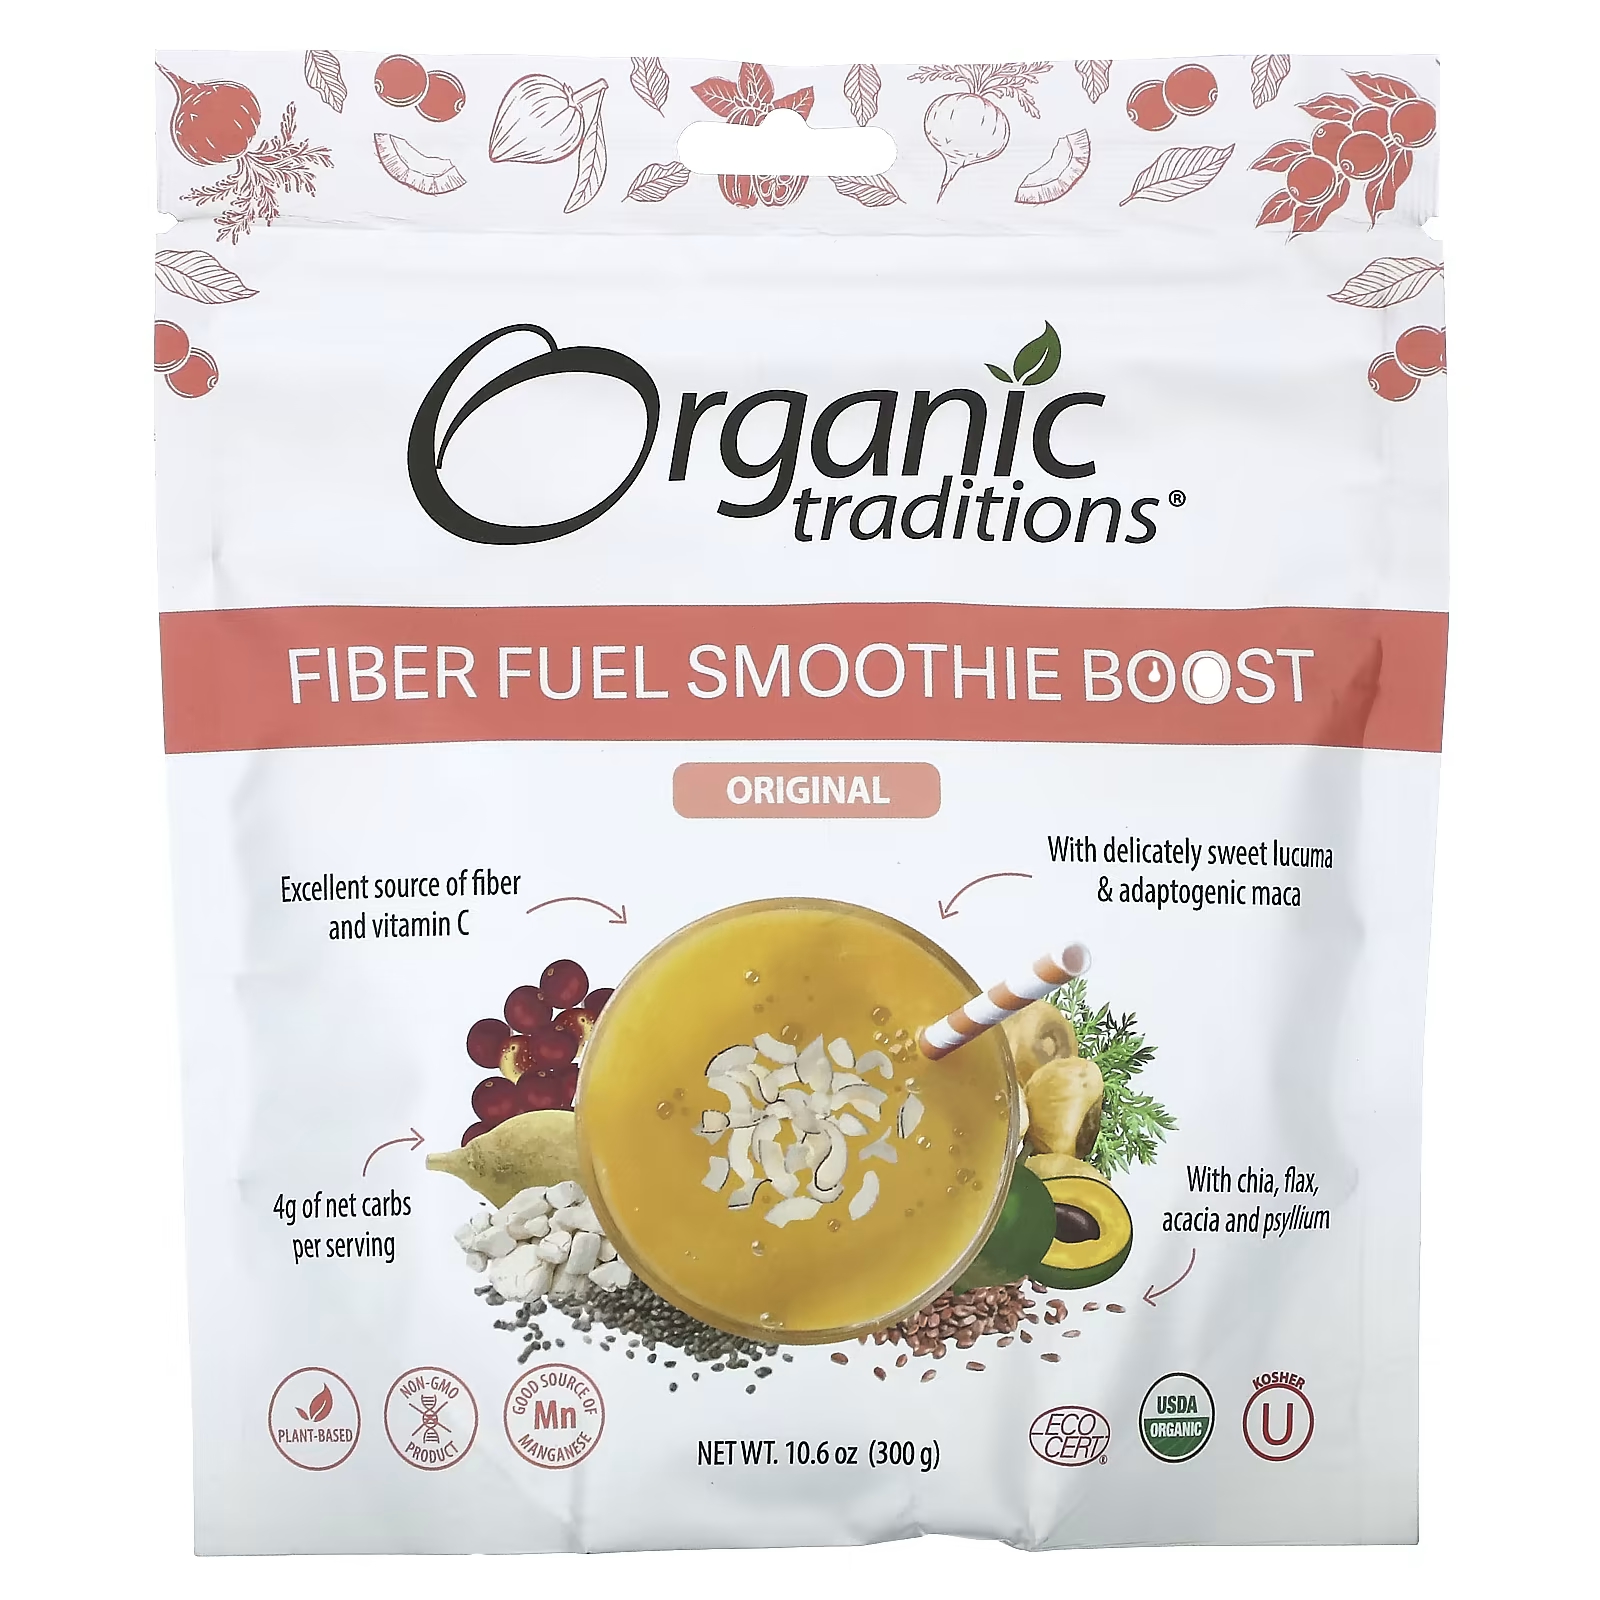 Пищевая добавка Organic Traditions Fiber Fuel Smoothie Boost Original, 300 г